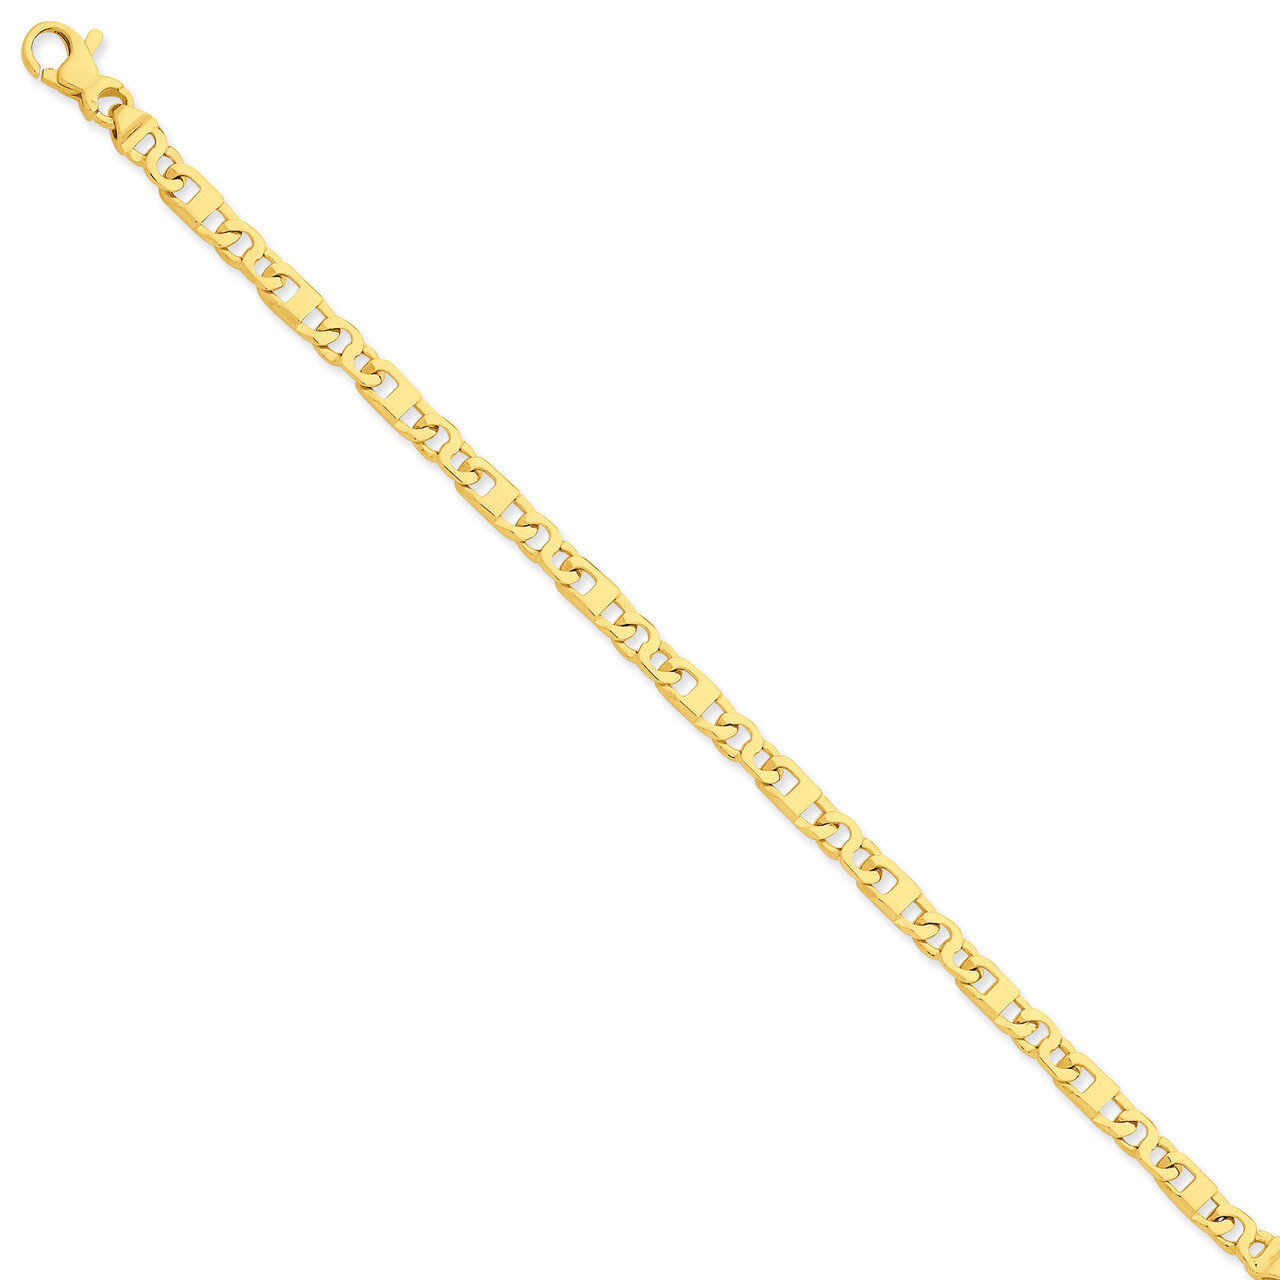 Fancy Link Chain 22 Inch 14k Gold LK669-22